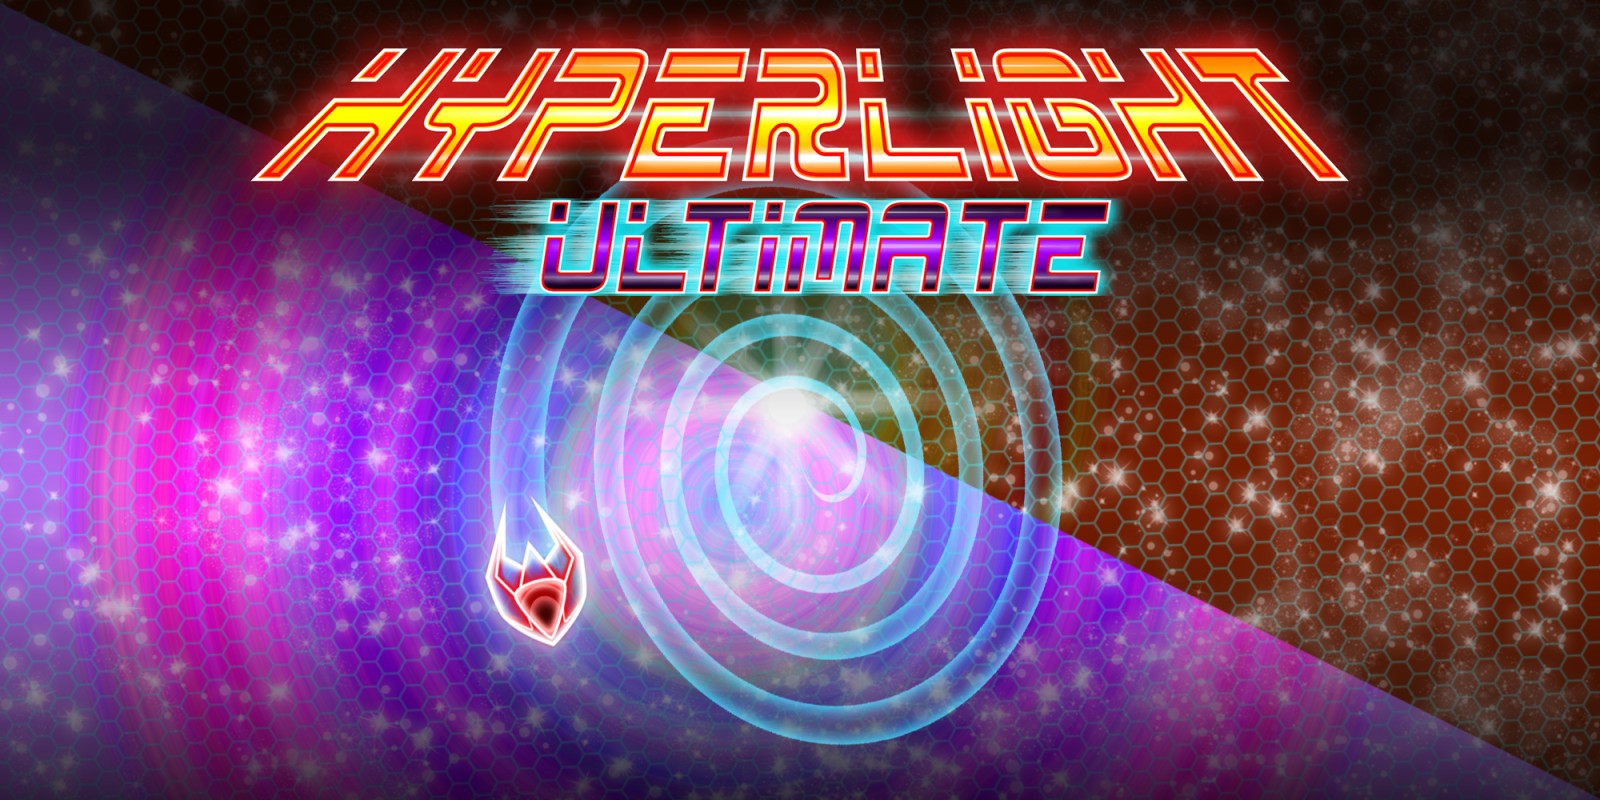 Hyperlight Ultimate